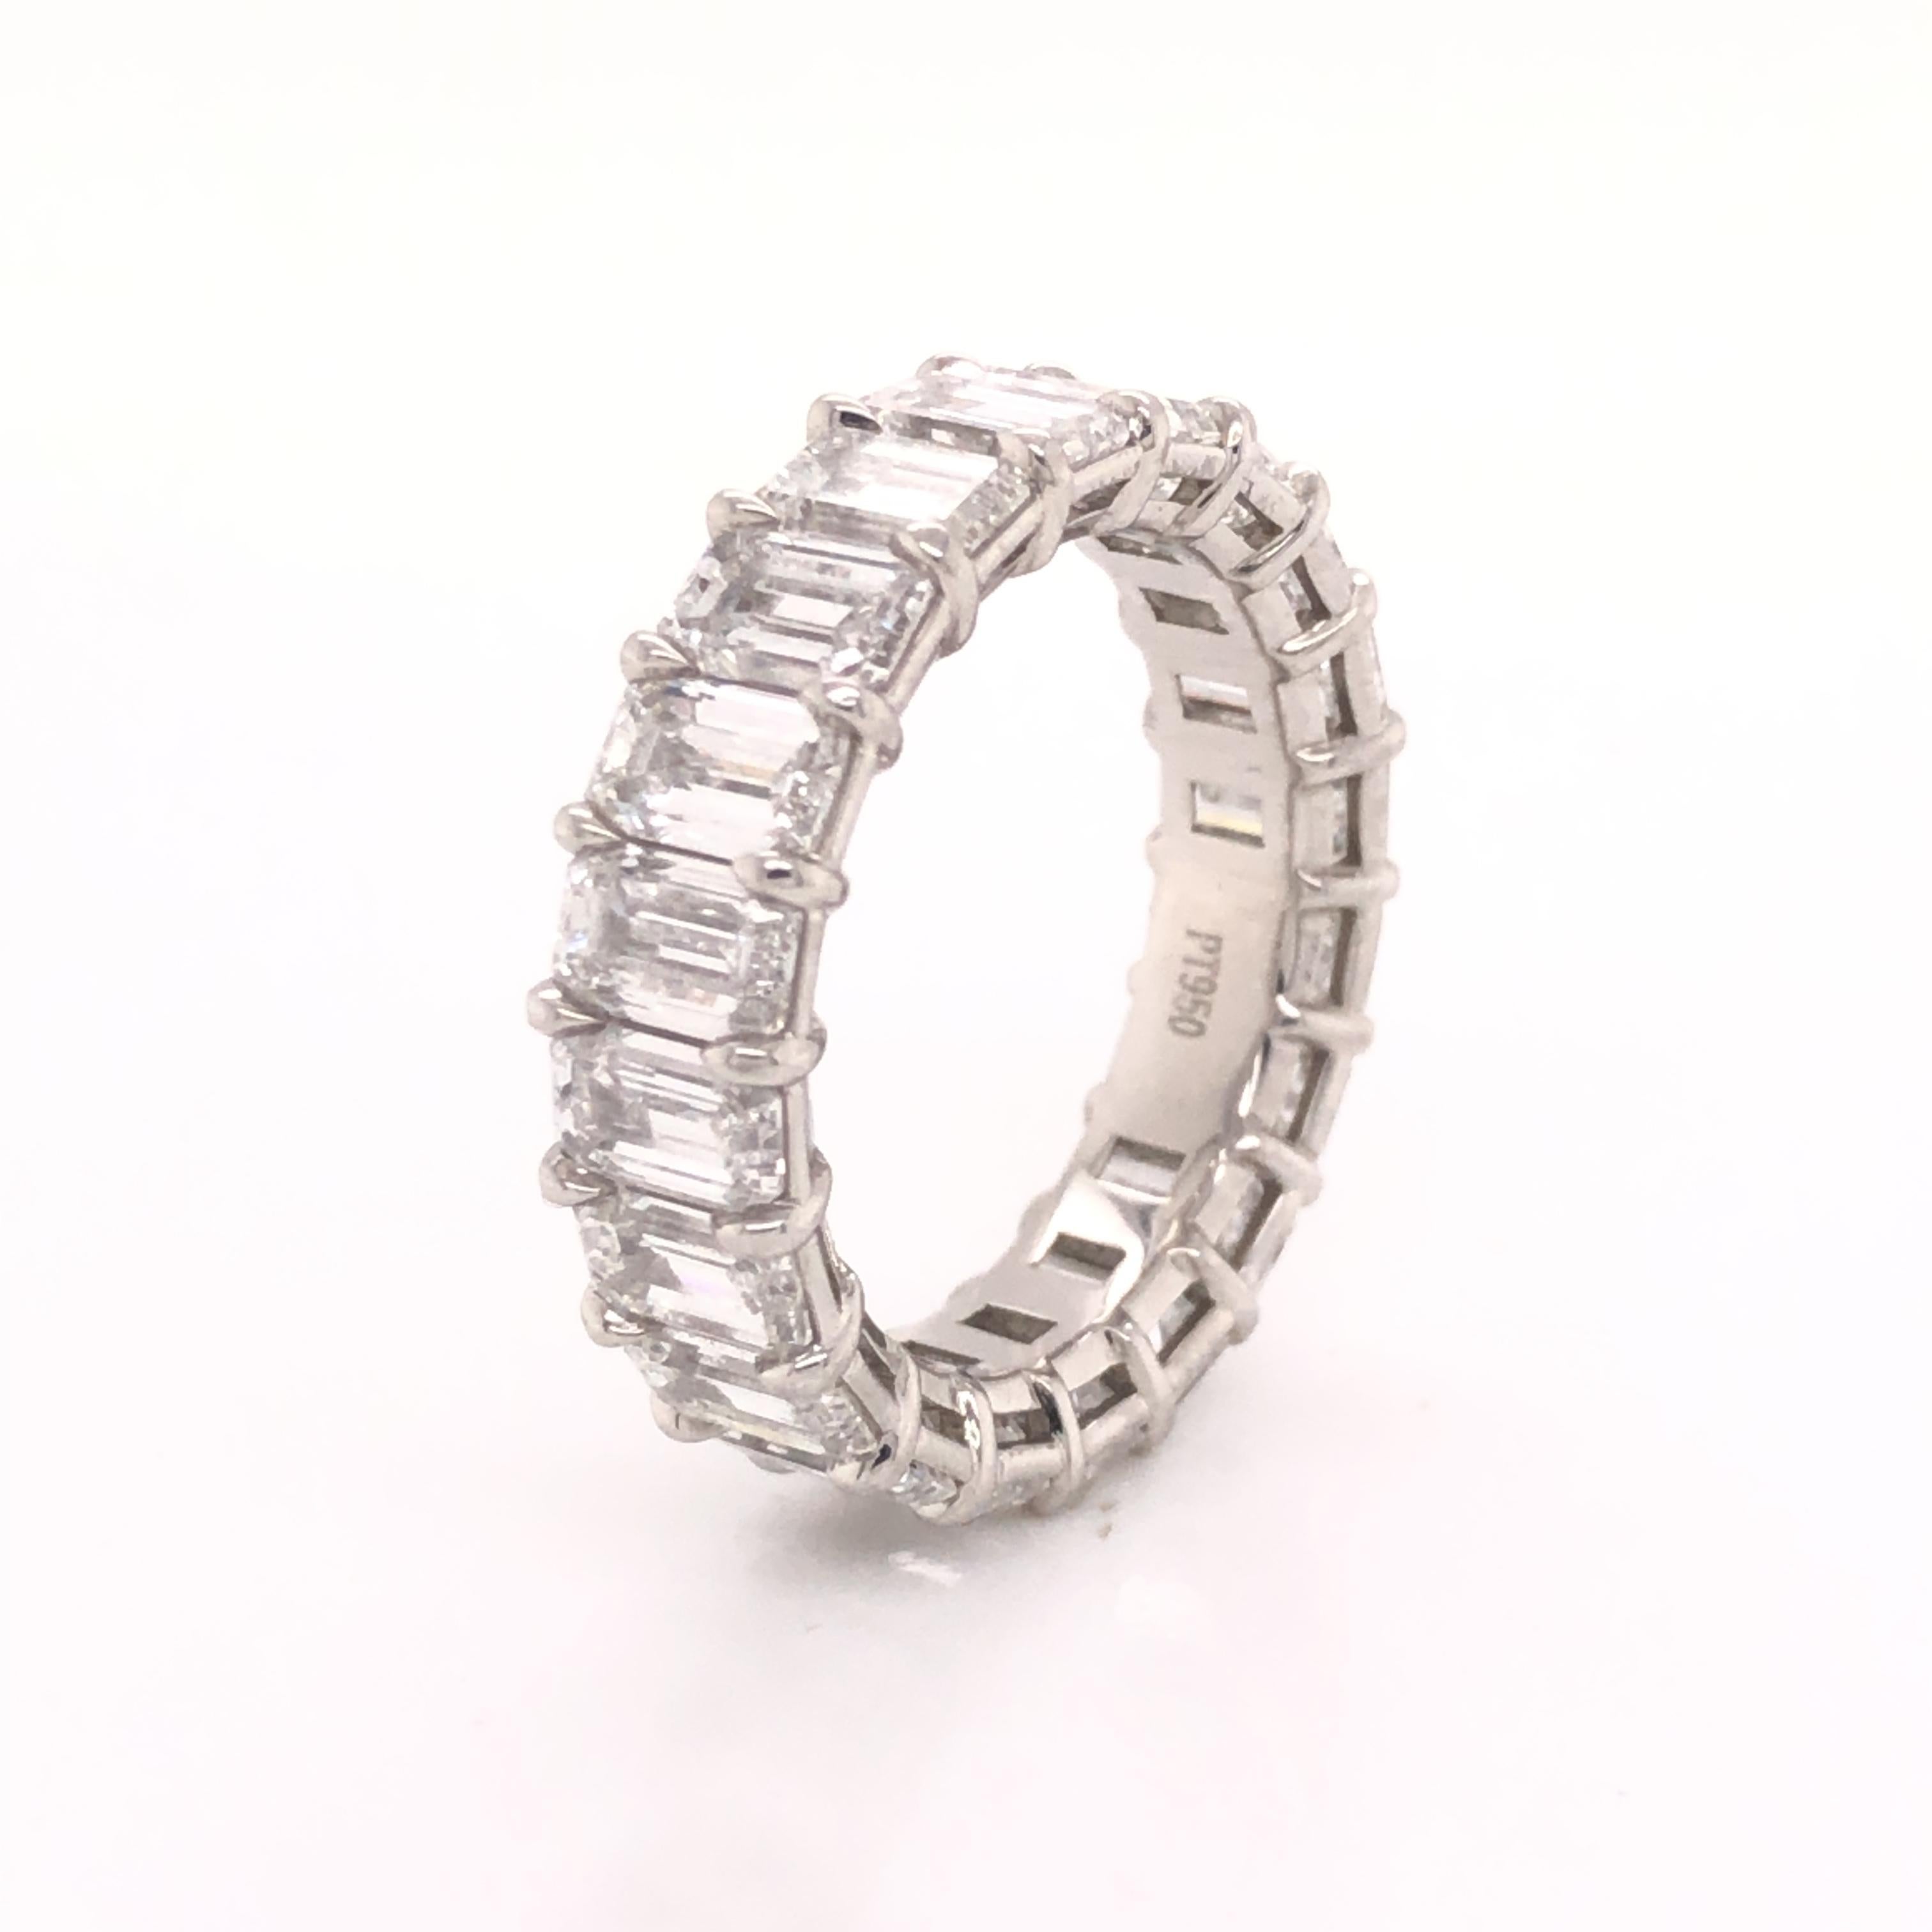 Étonnant anneau d'éternité réalisé en platine. Ce magnifique anneau d'éternité est serti de 20 diamants taille émeraude au total. La bague affiche une valeur de 8,05 tcw. Chaque diamant de cette bague pèse environ 0,40 ct, tous les diamants sont